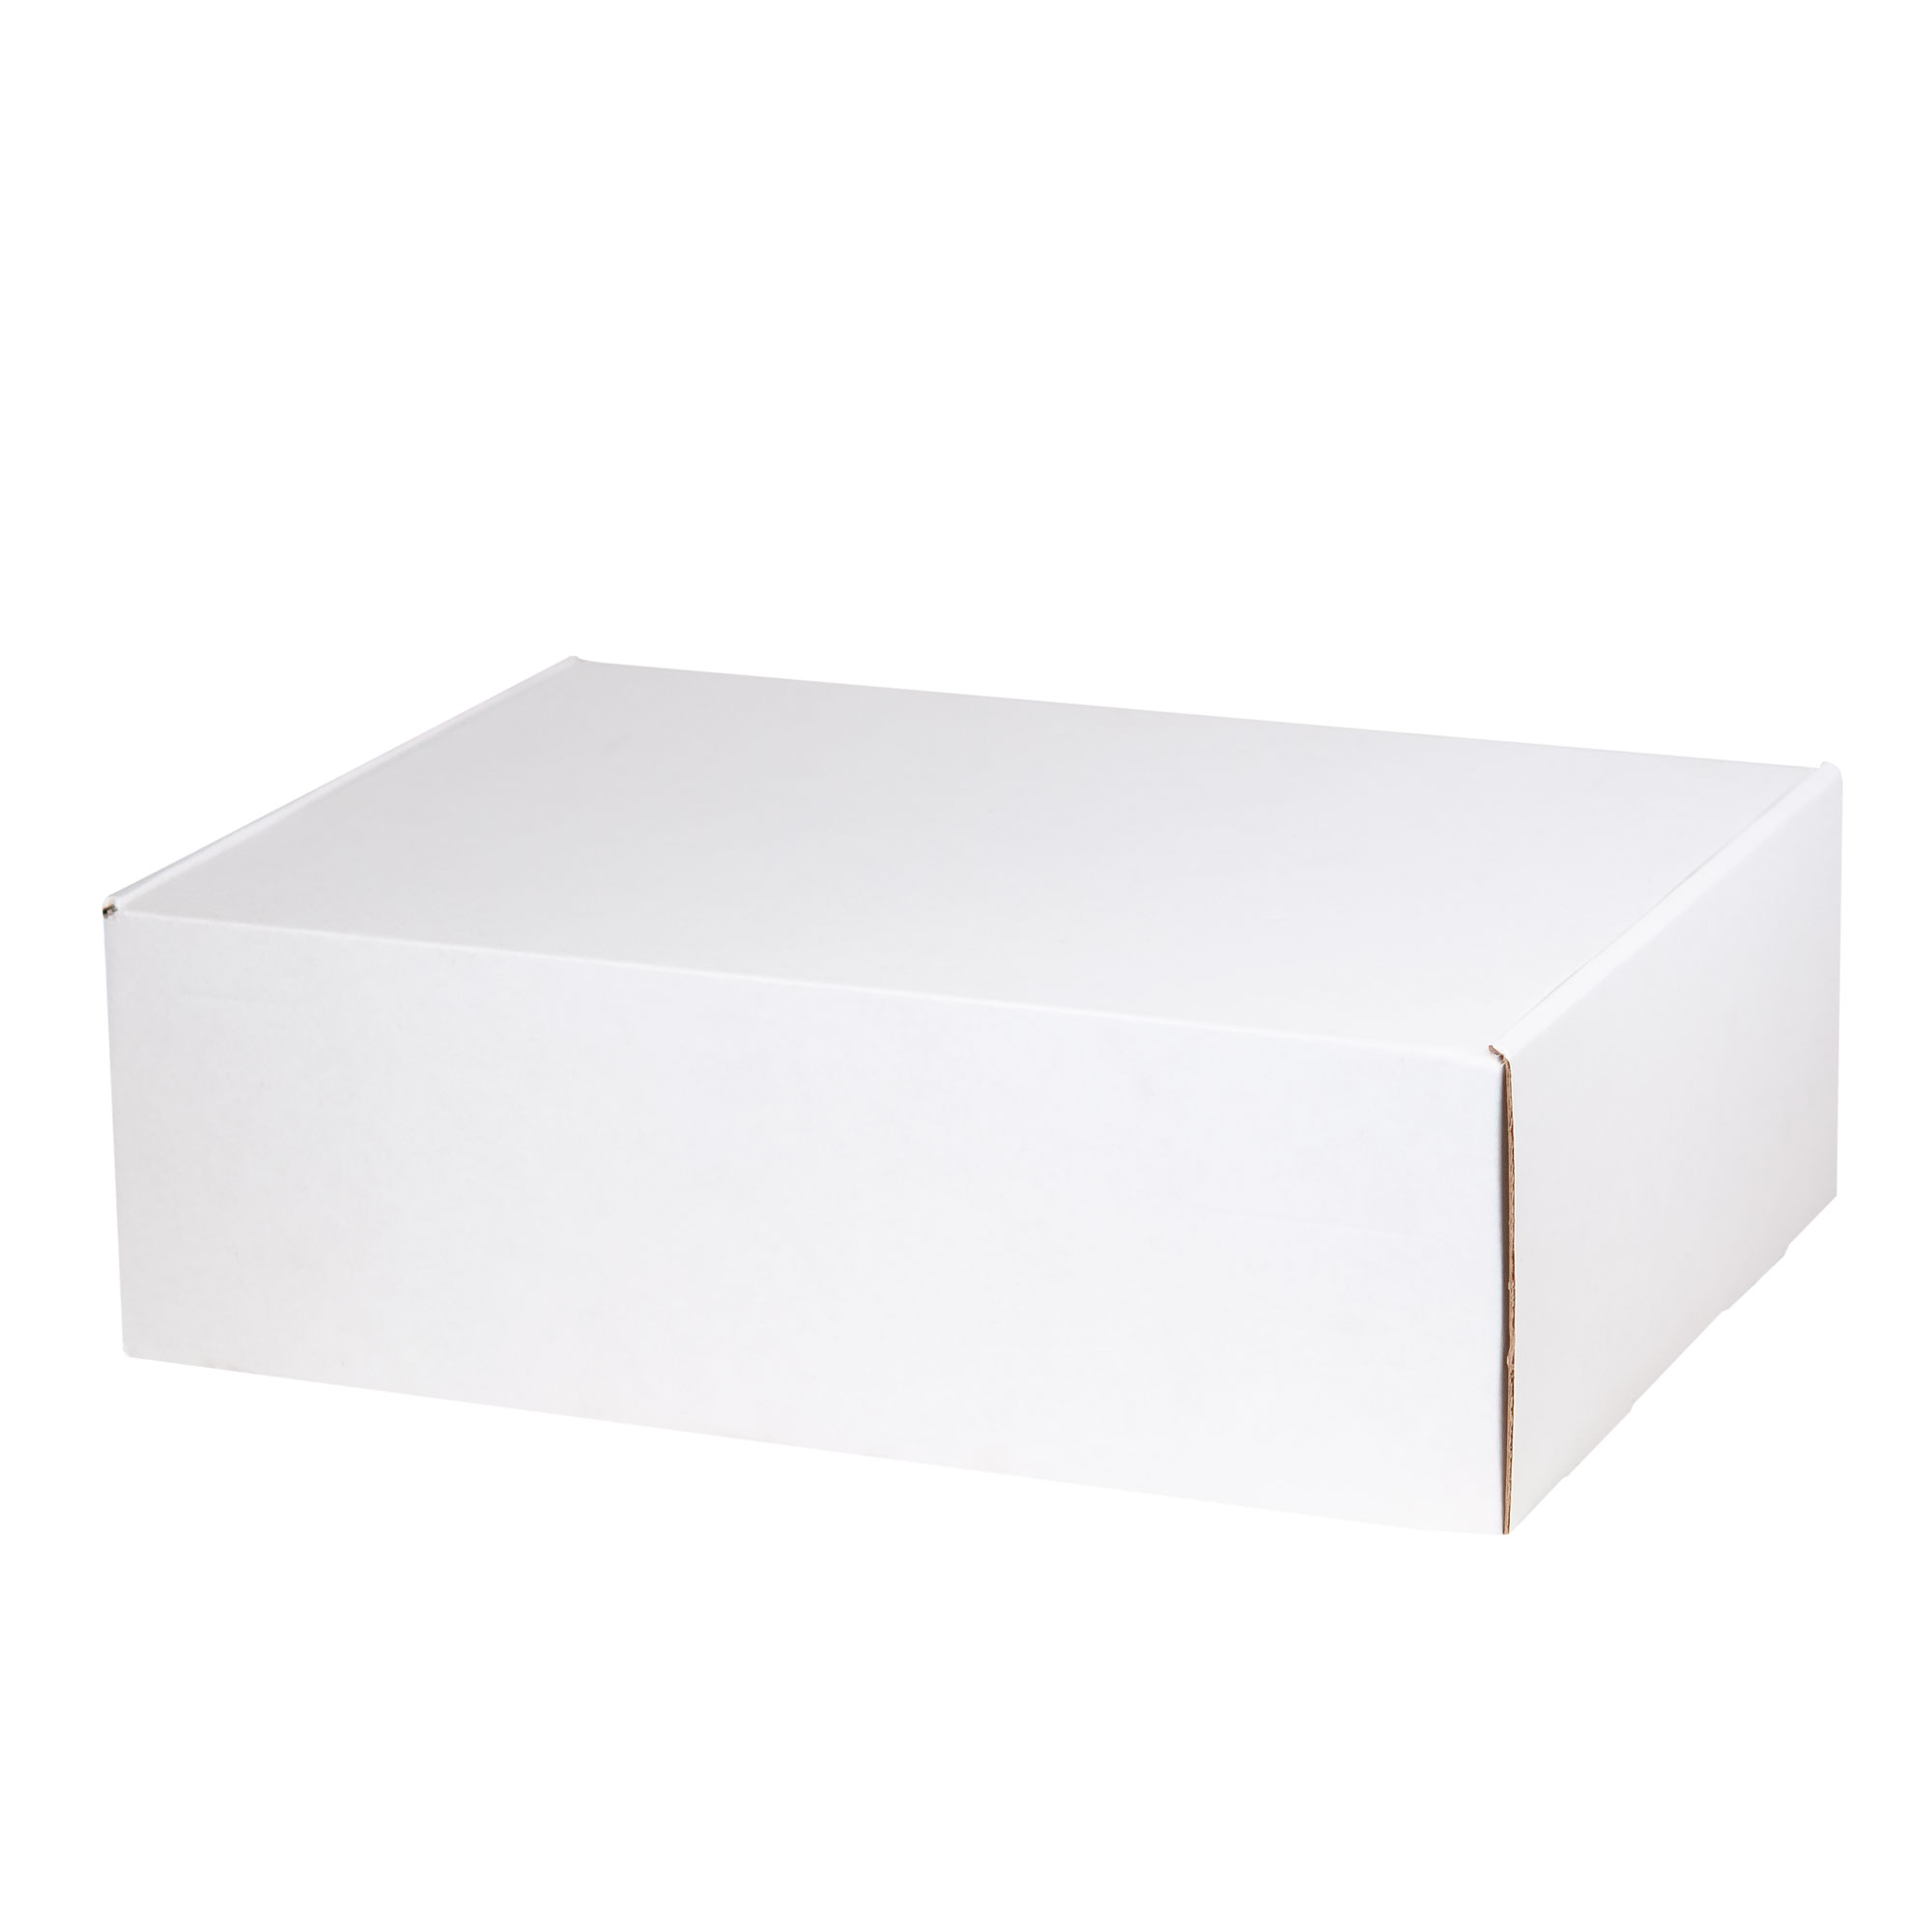 Подарочная коробка для набора универсальная, крафт, 350*255*113 мм